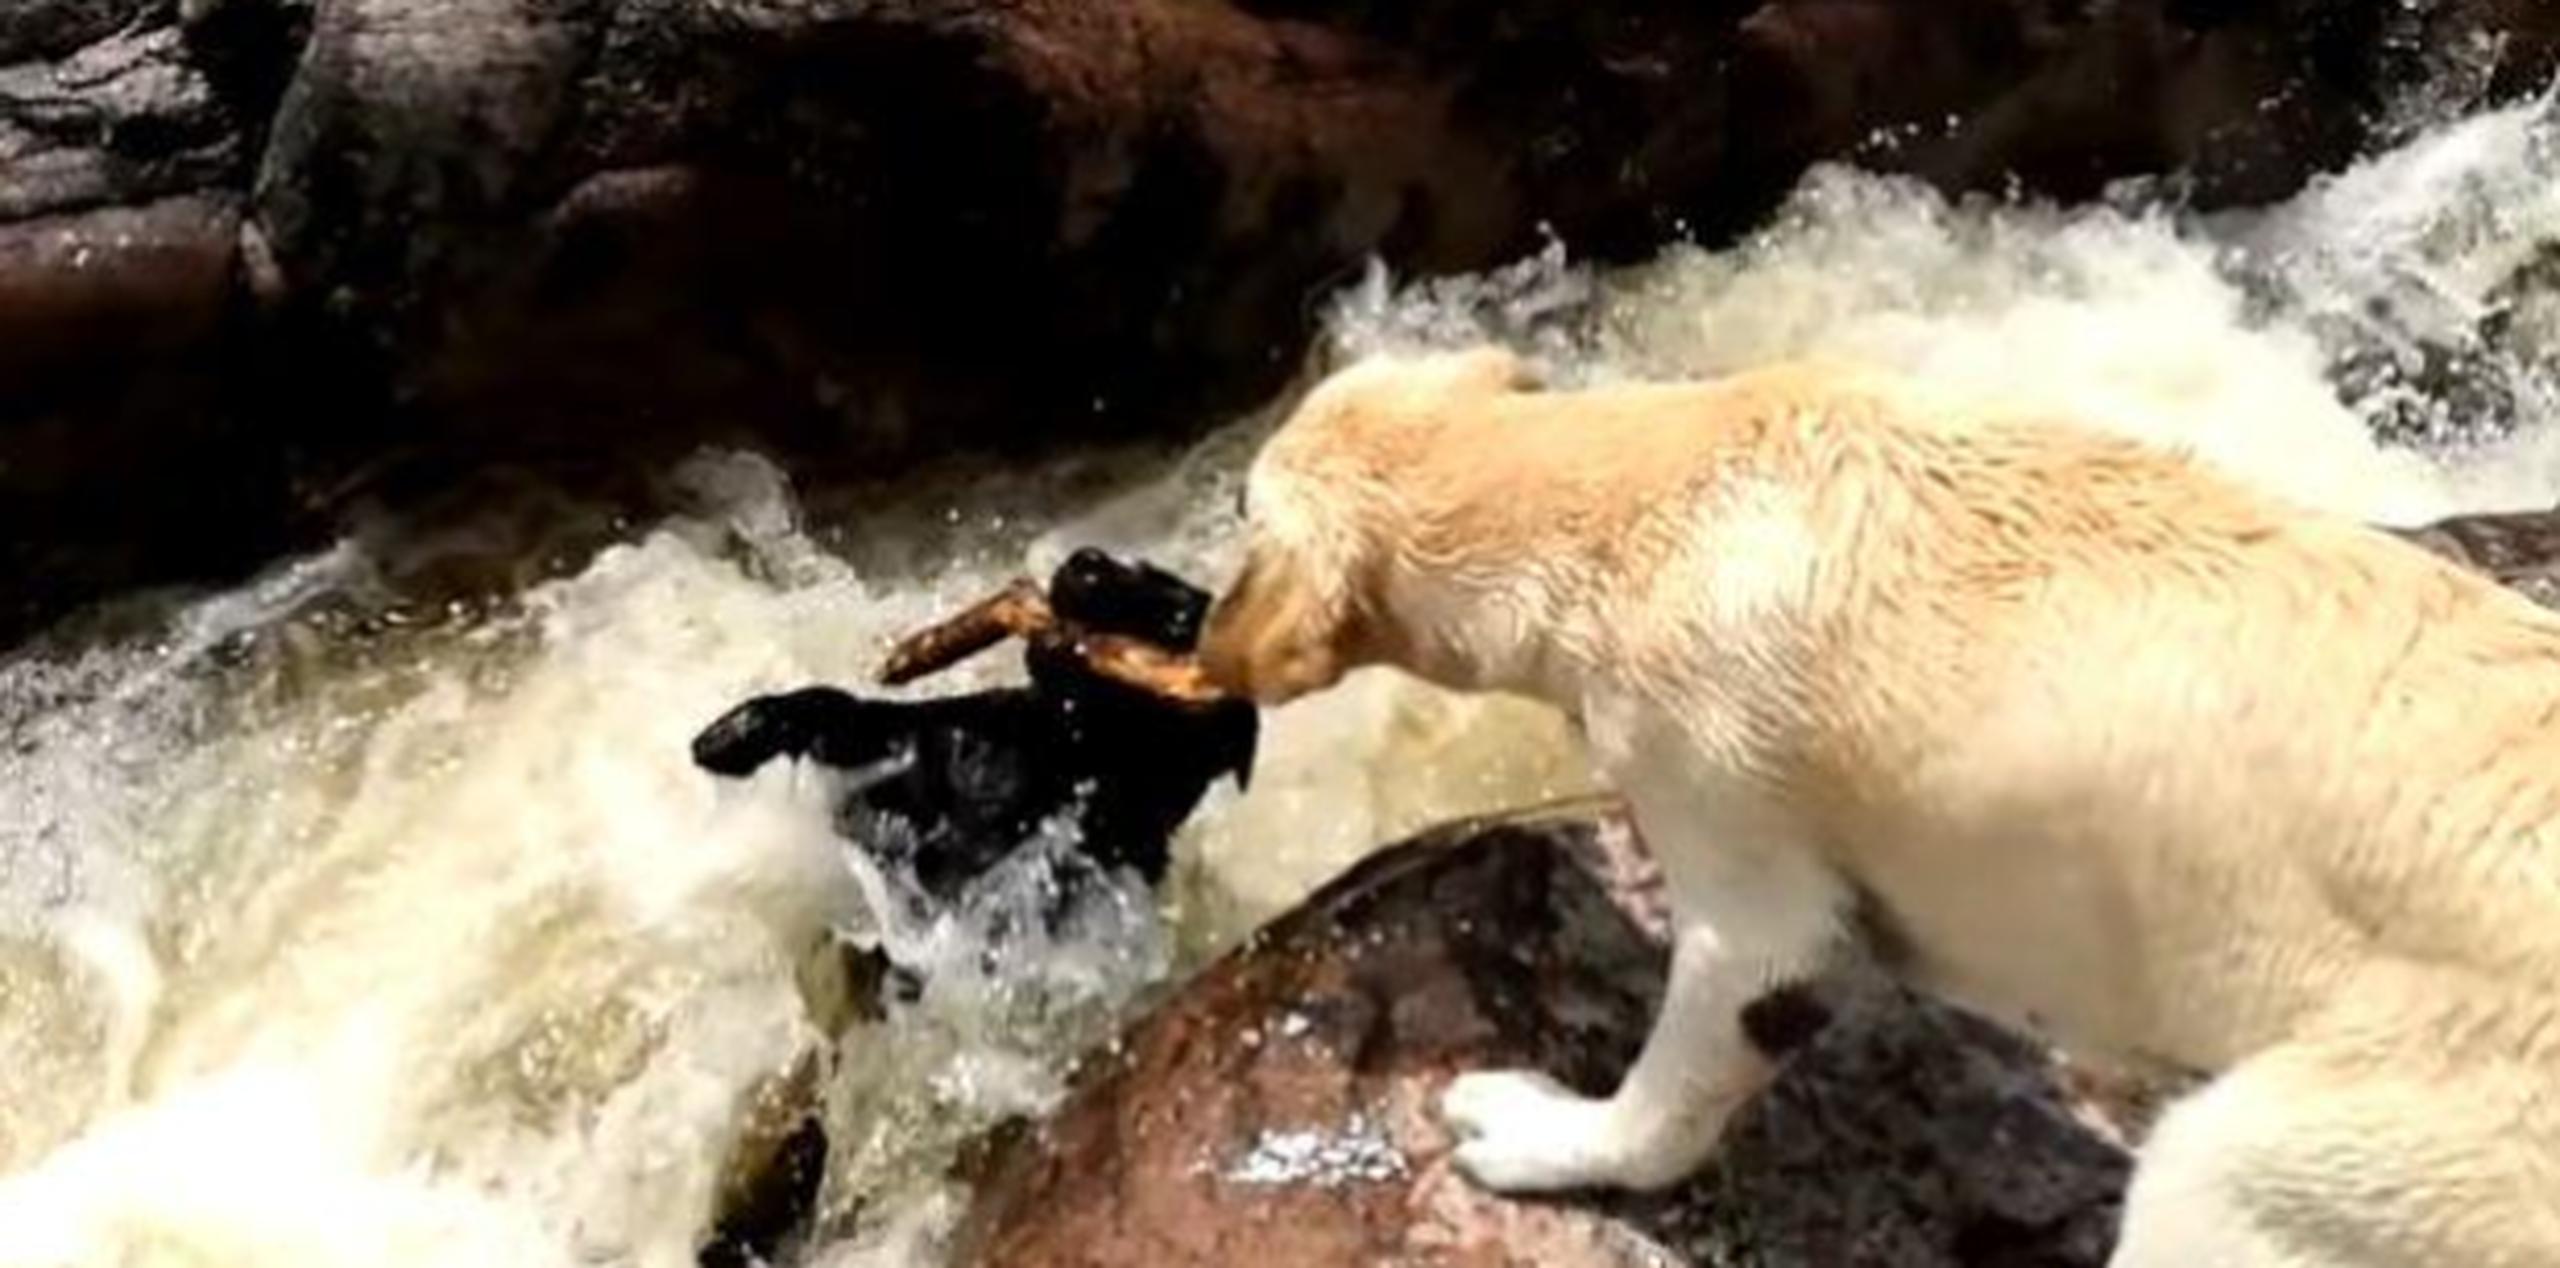 Para suerte del can, su compañero reacciona rápidamente y logra sostenerlo tomándolo del palo que aún mordía. (Foto/Captura)